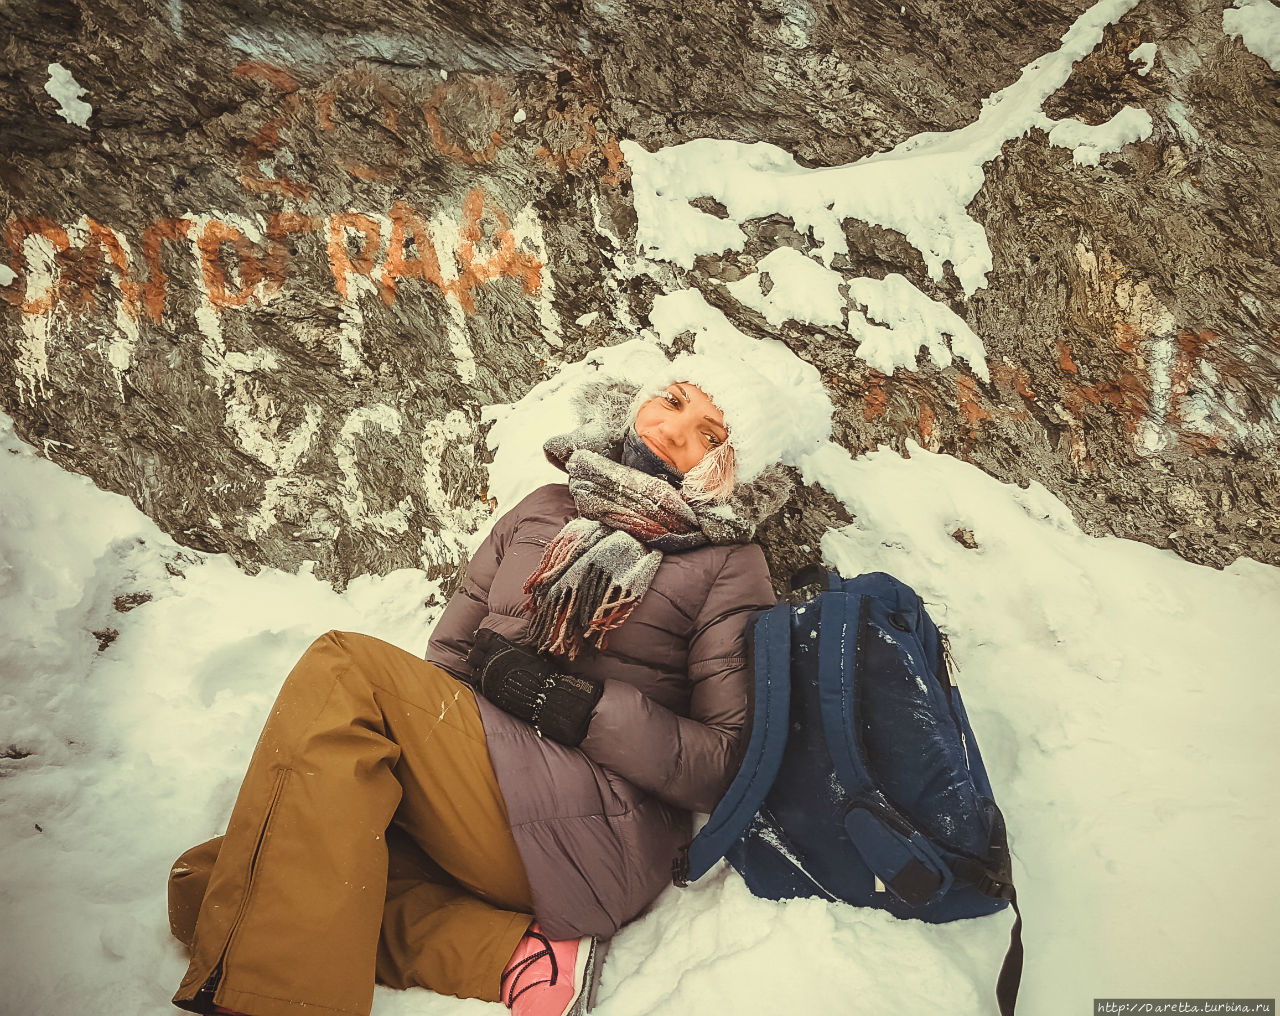 Маленькие сугробики... Зима... гора Колпаки гора Колпак (614м), Россия